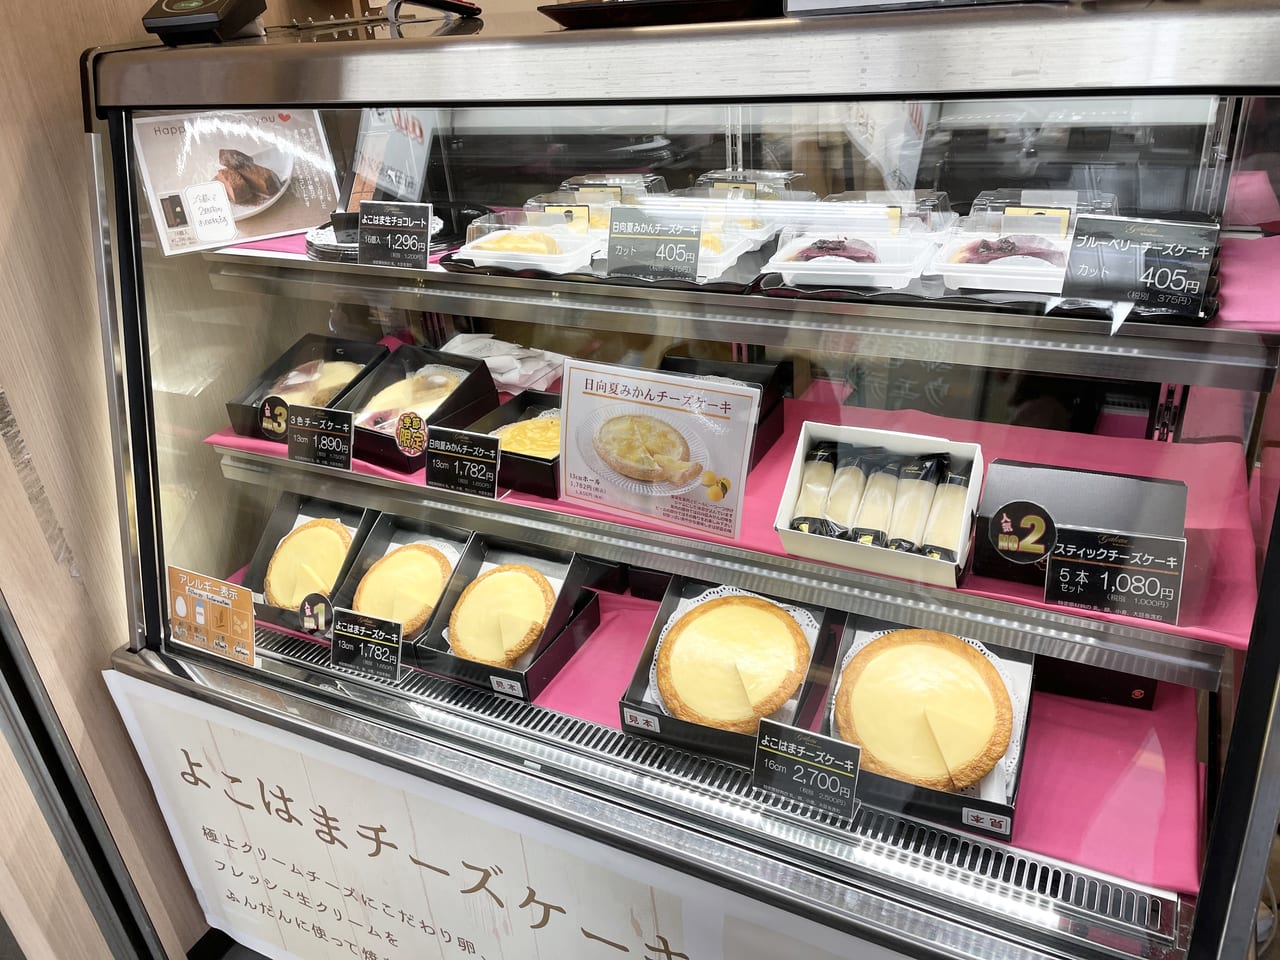 町田市 ガトーよこはまの看板スイーツ 伝説のチーズケーキ がjr町田駅改札横にポップアップストアを出店 こだわりぬいた極上のチーズケーキは如何 号外net 町田市